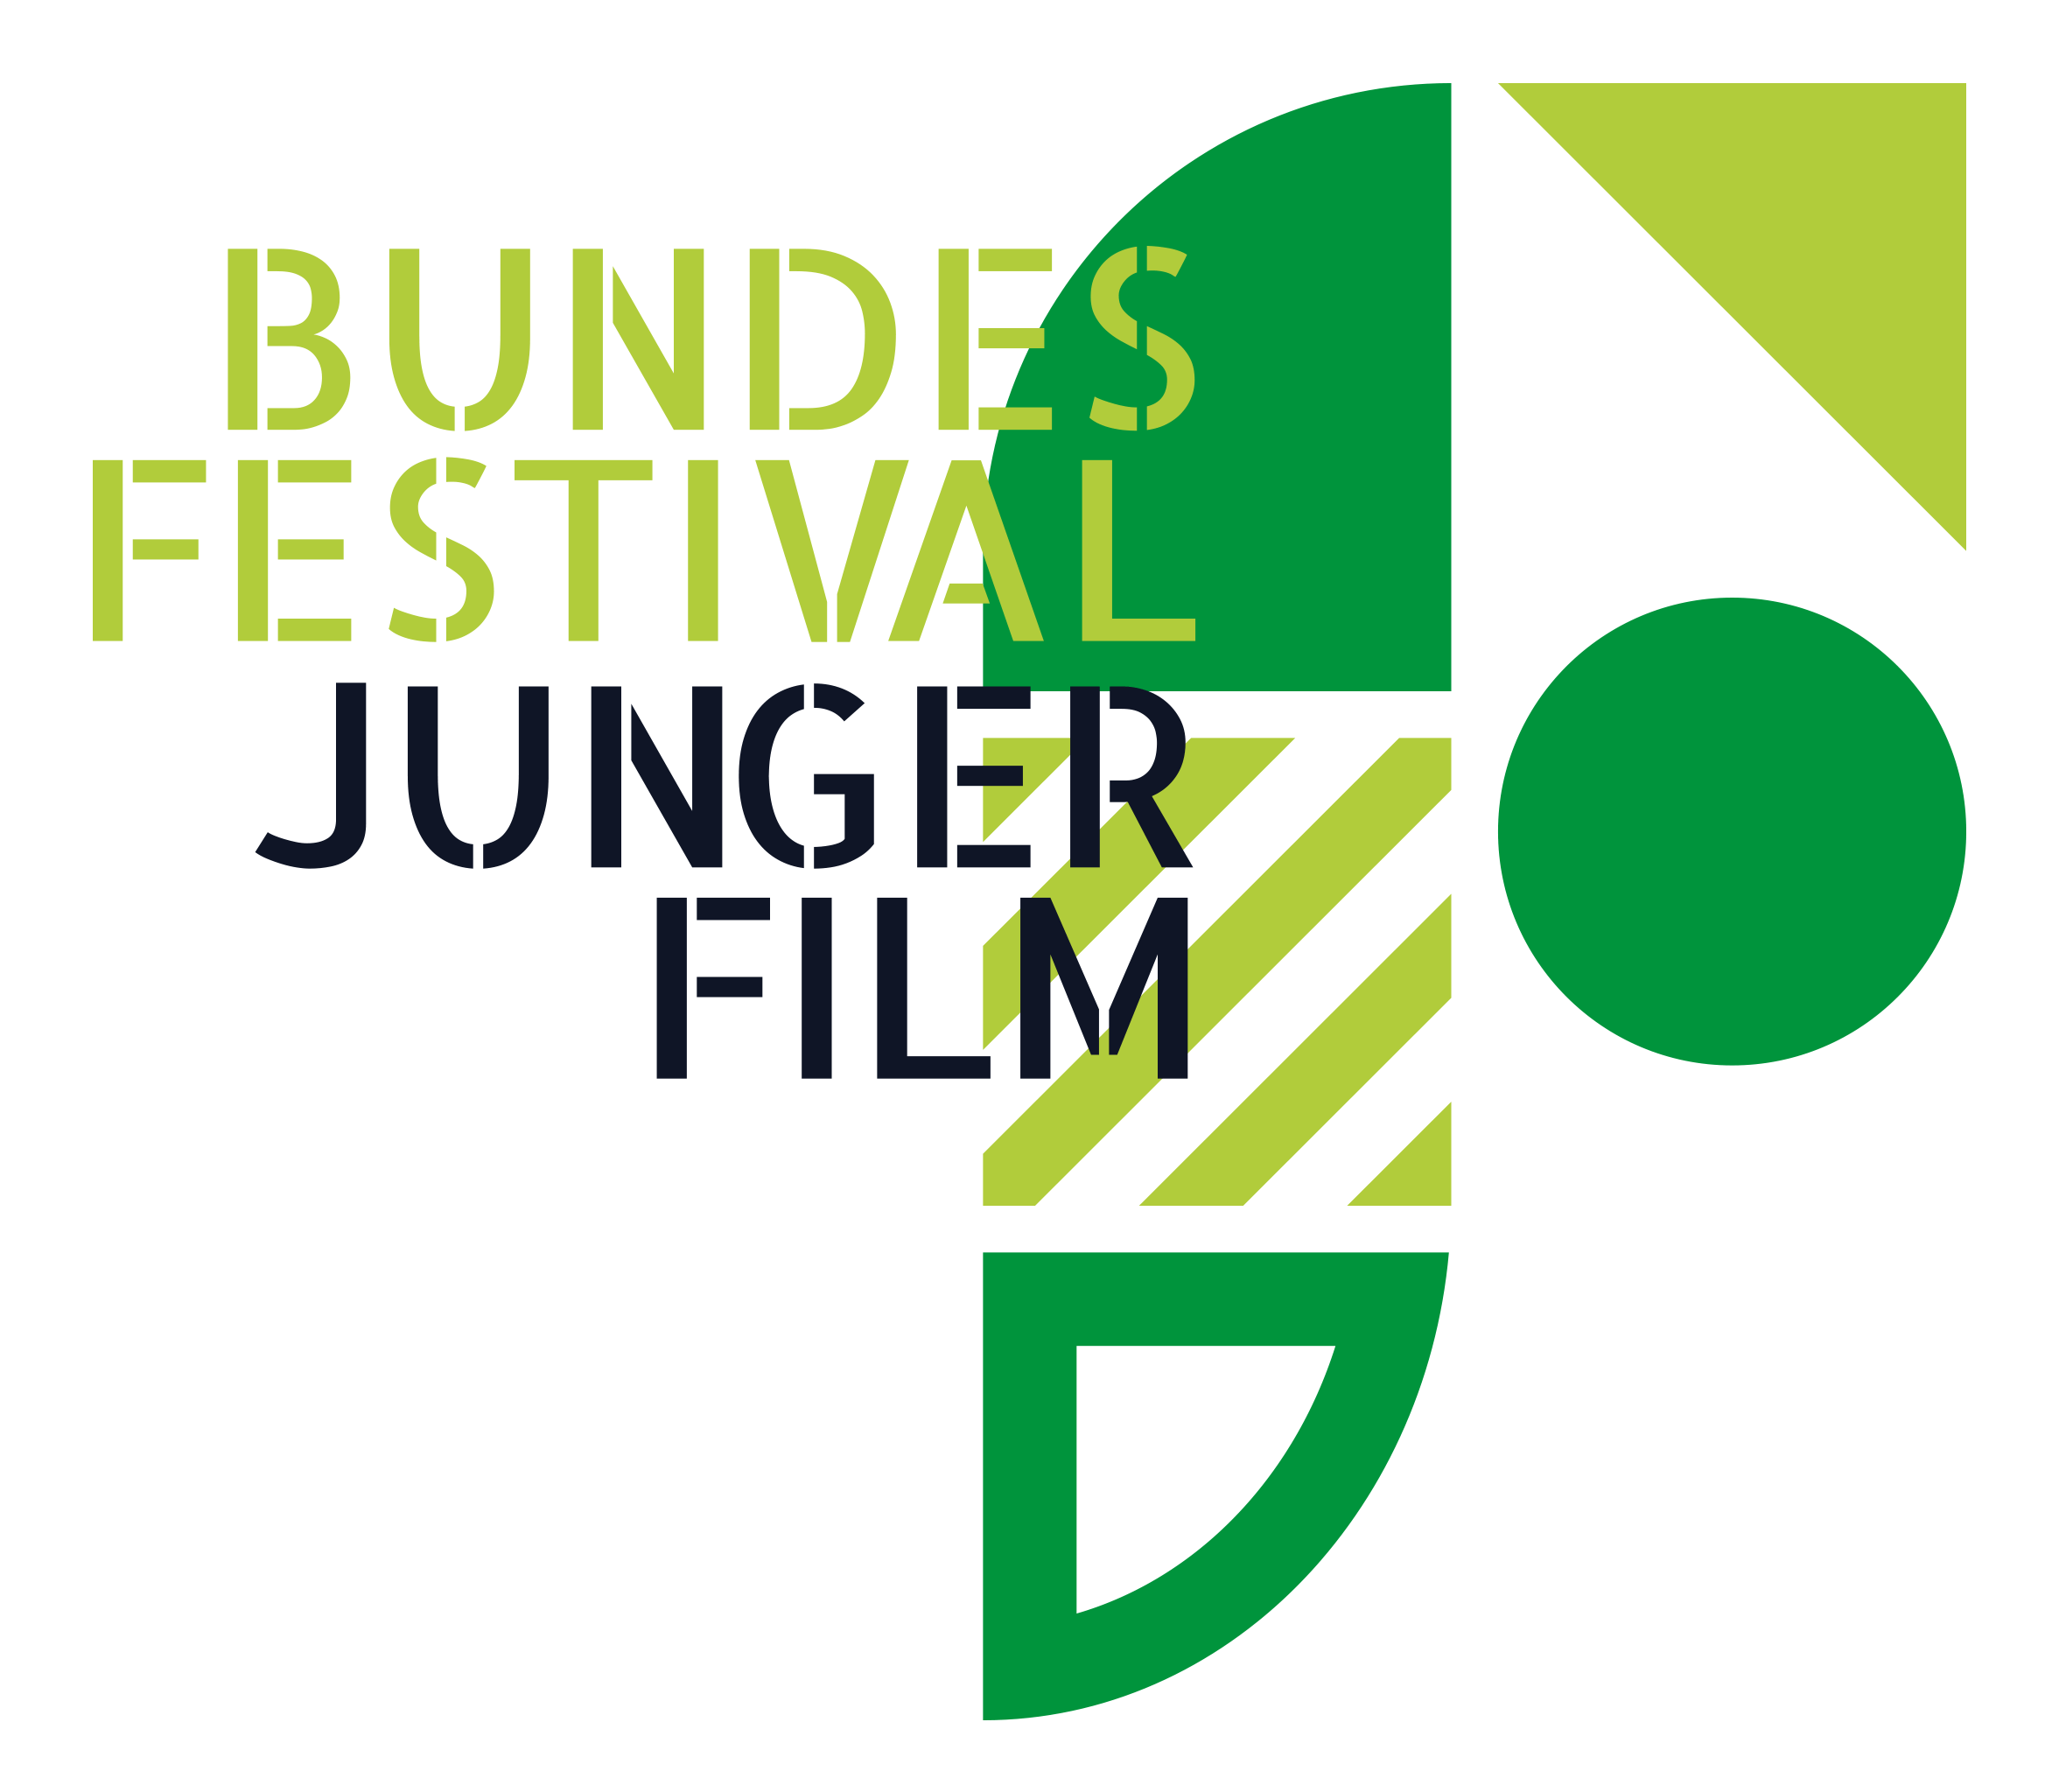 Bundesfestival junger Film